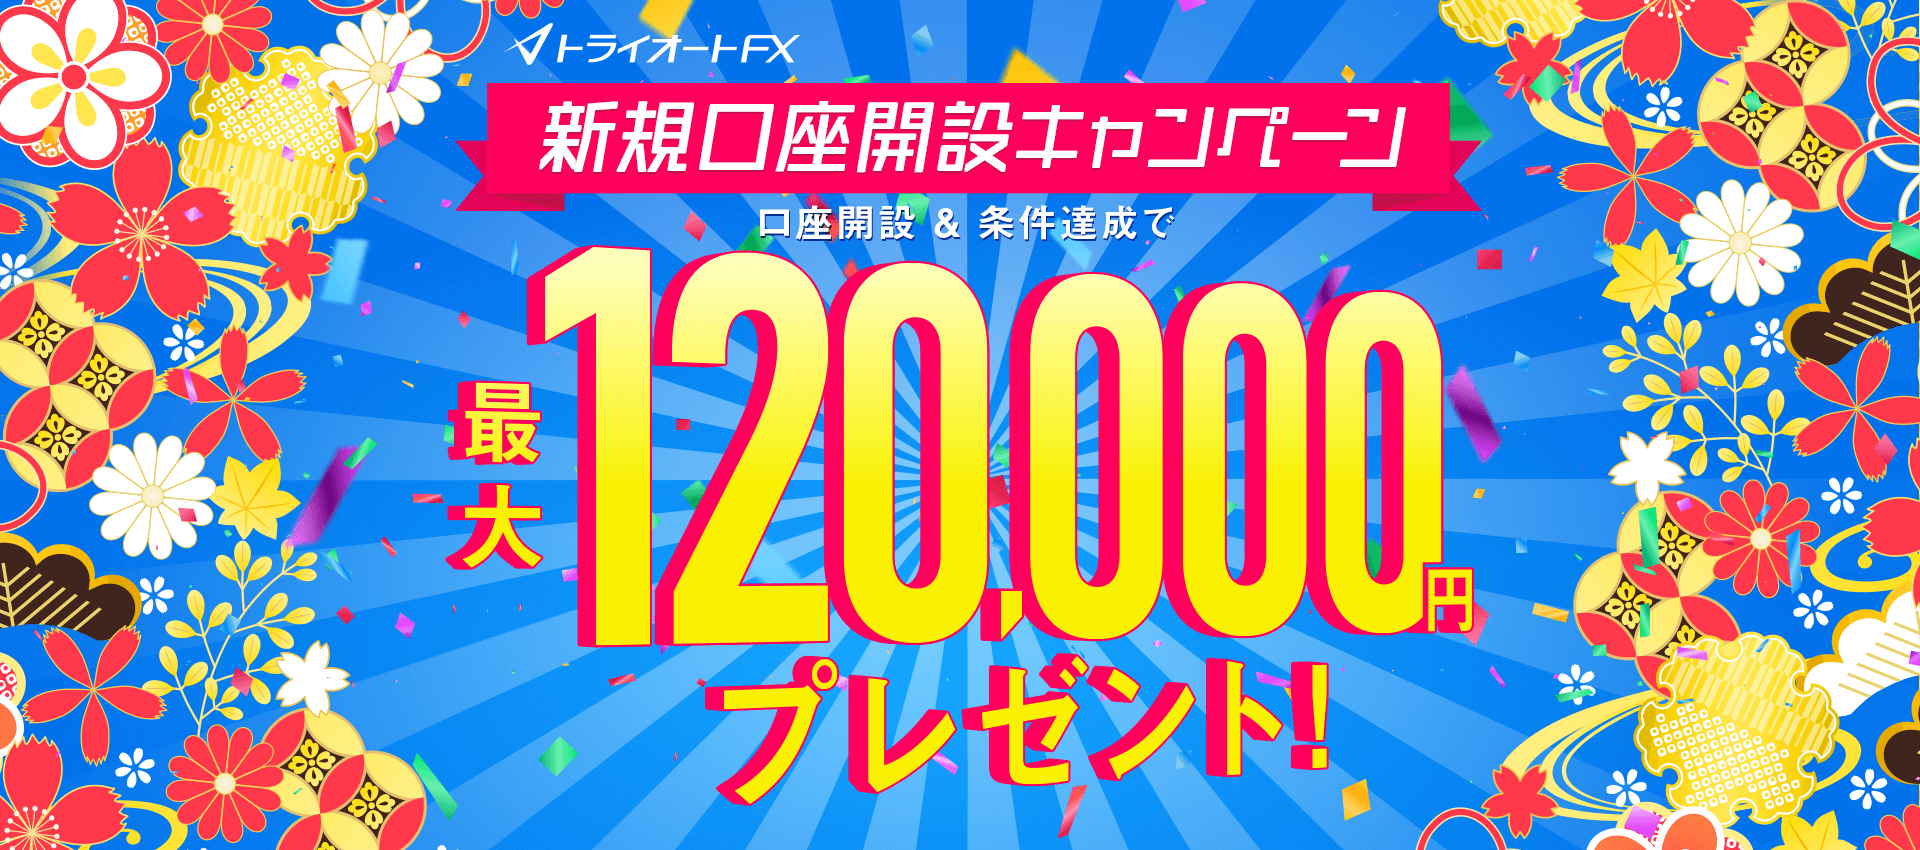 トライオートFX新規口座開設キャンペーン 最大120,000円プレゼント！